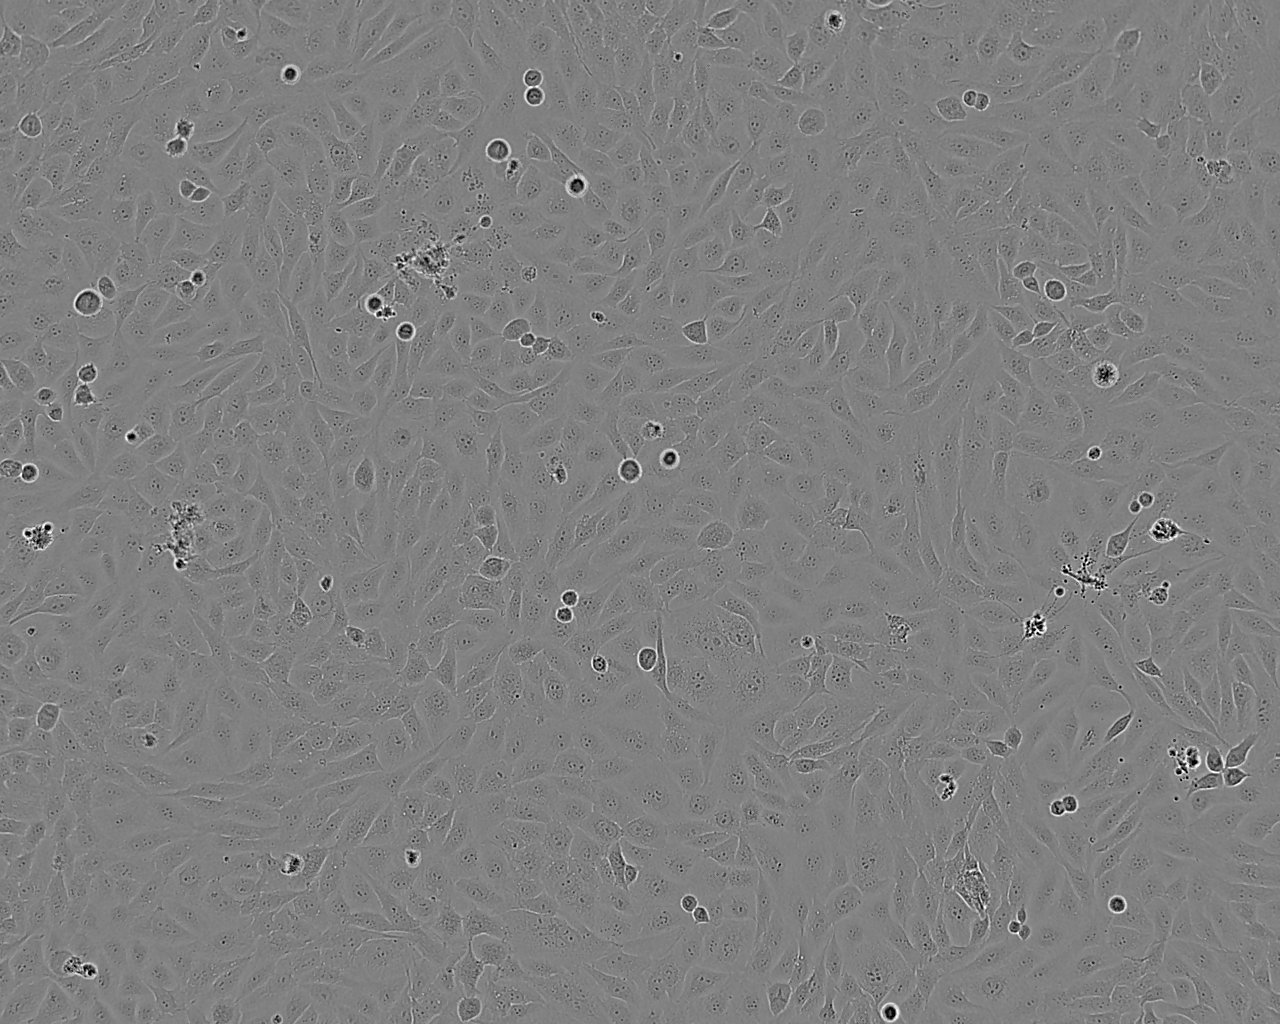 KATO III epithelioid cells人胃癌细胞系,KATO III epithelioid cells